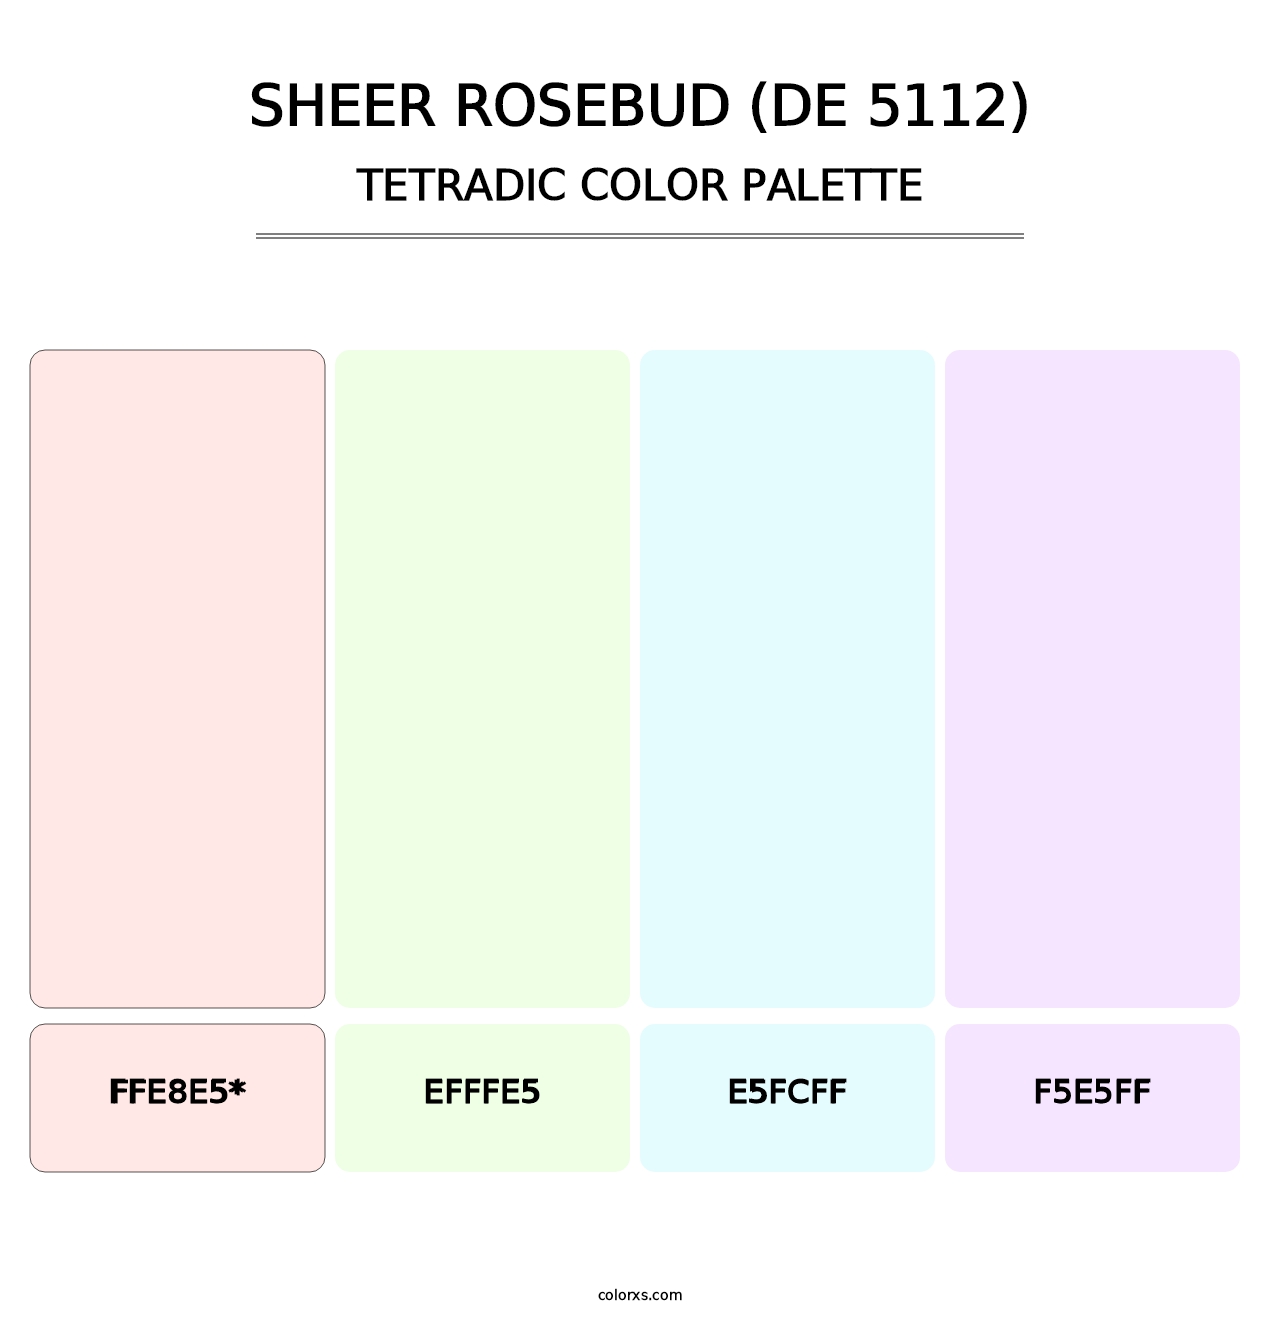 Sheer Rosebud (DE 5112) - Tetradic Color Palette